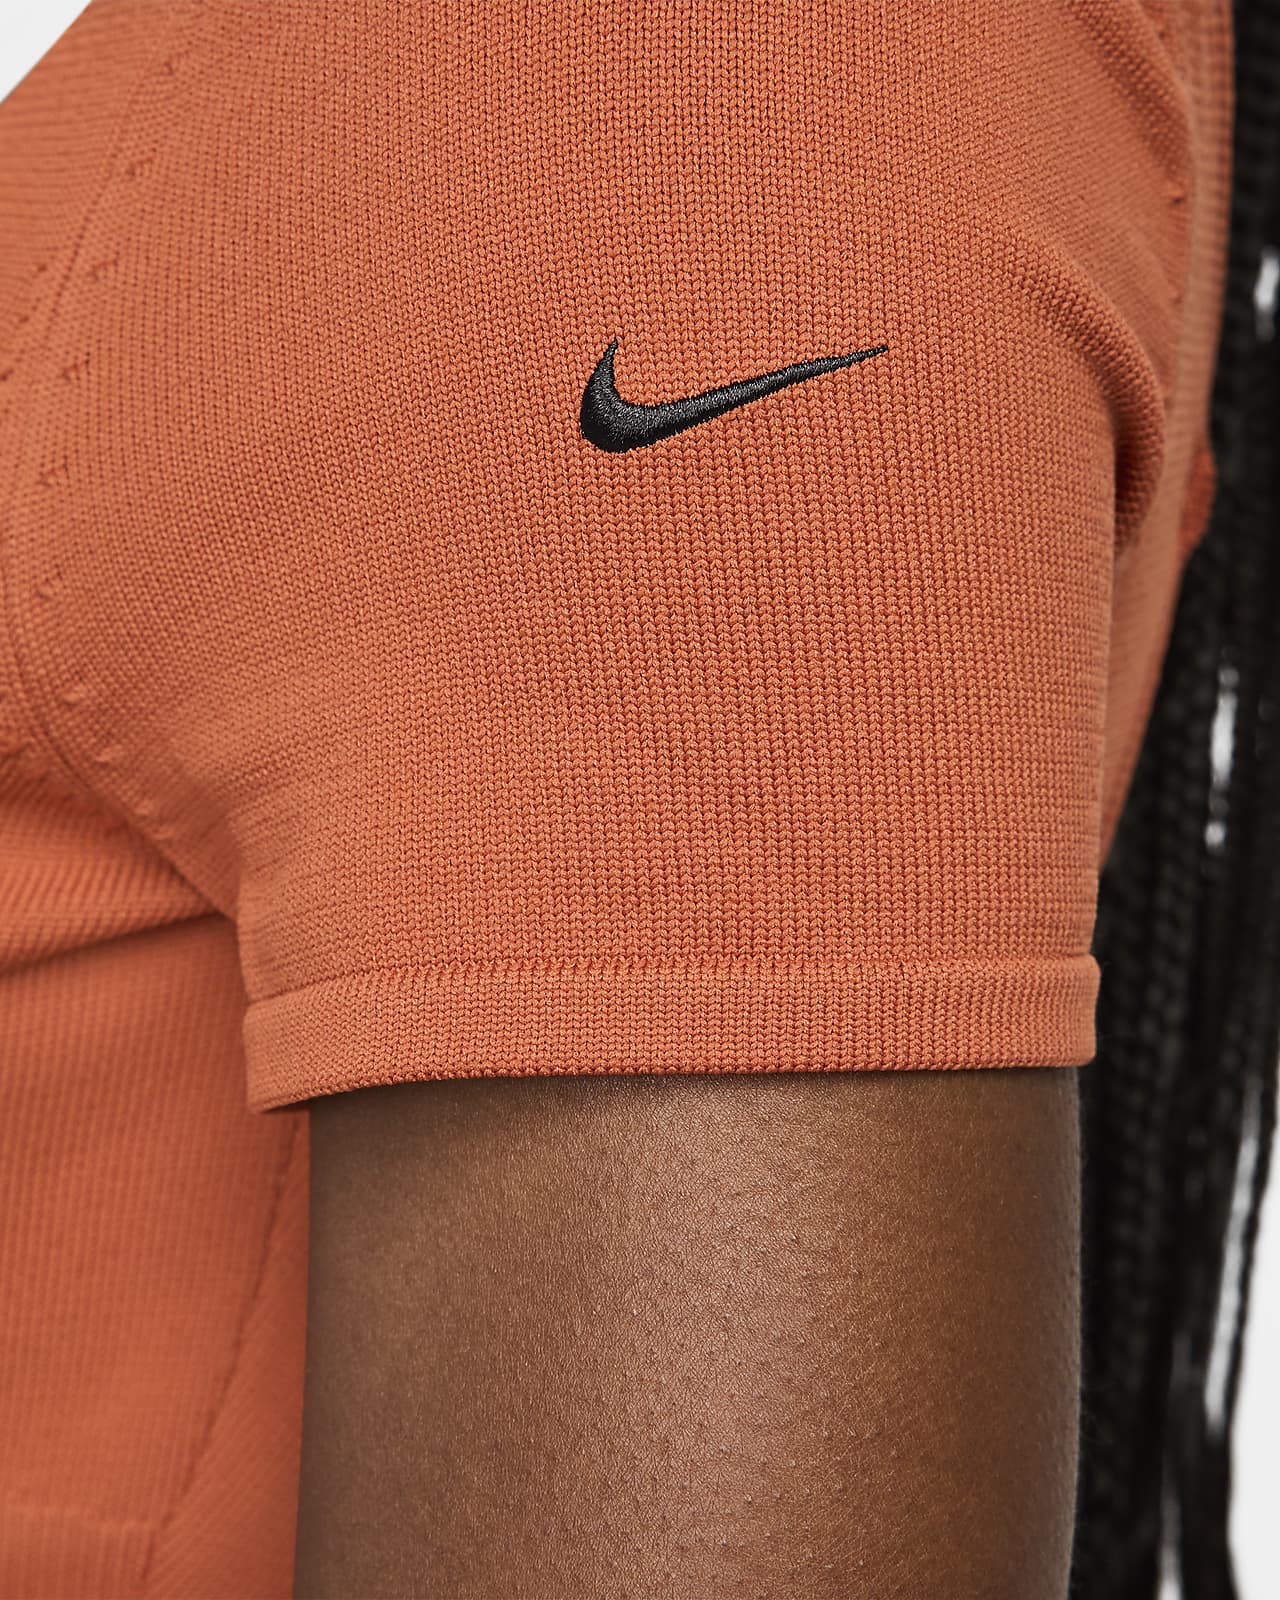 Nike Sportswear Chill Knit Women's Tight Sweater Short-Sleeve Bodysuit